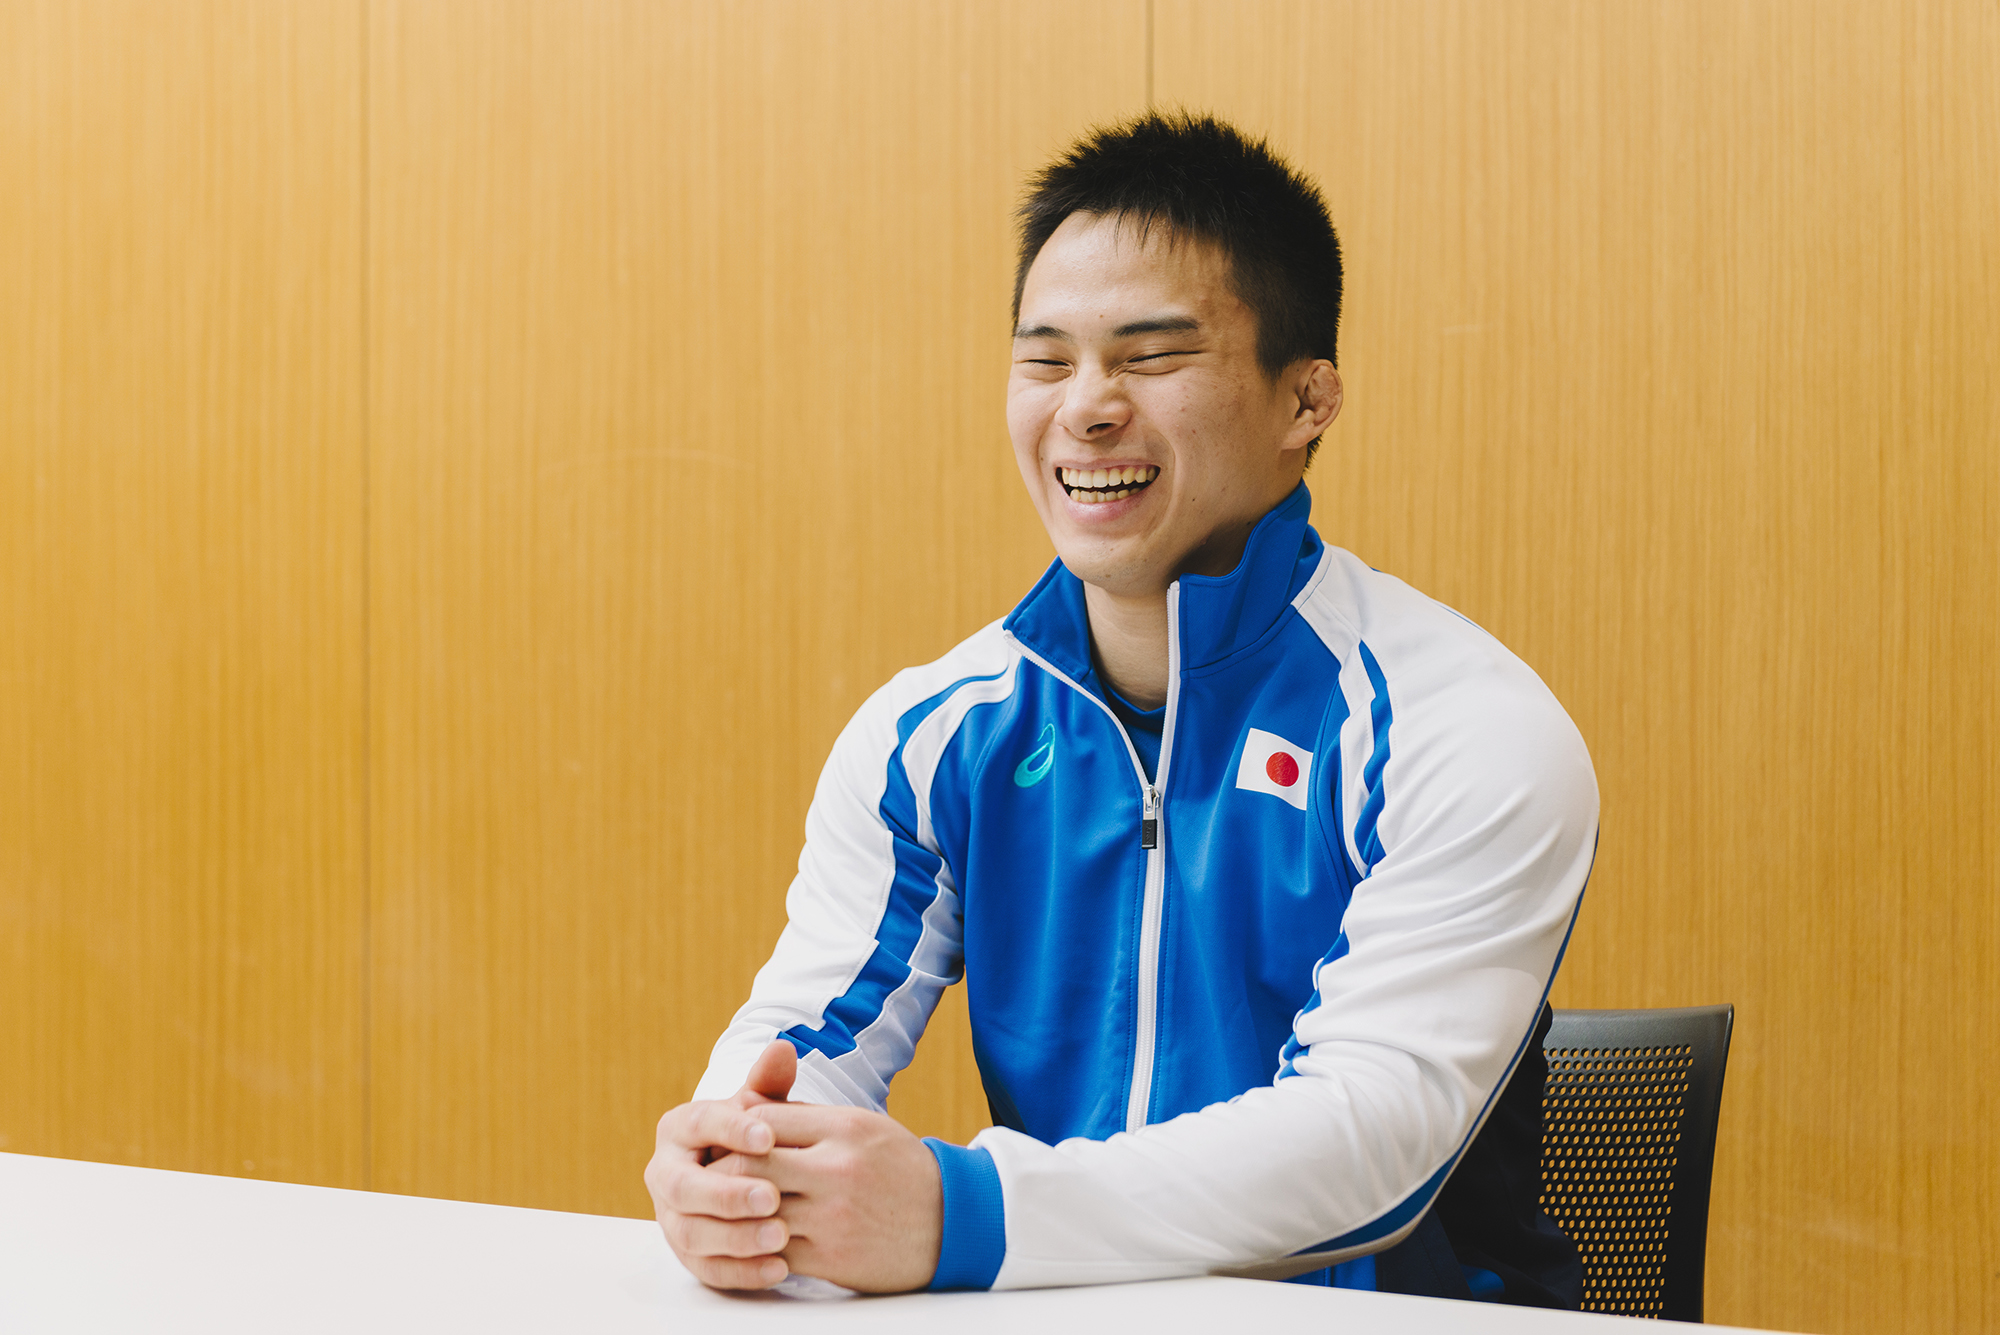 瀬戸勇次郎選手のインタビューを終えて談笑している様子